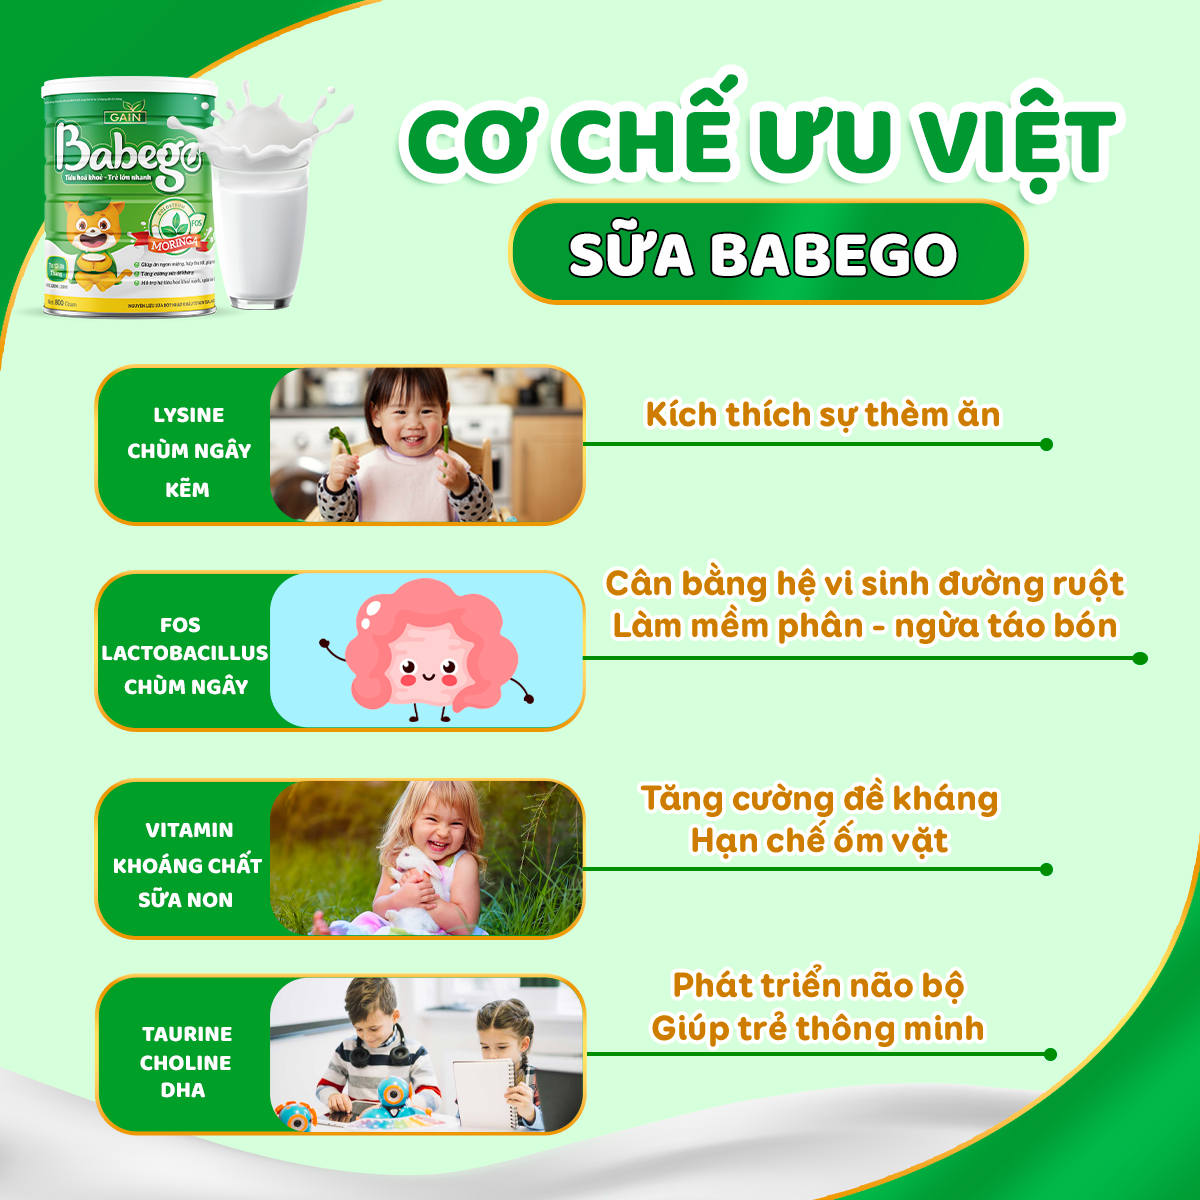 Sữa Babego cải thiện tình trạng táo bón cho trẻ